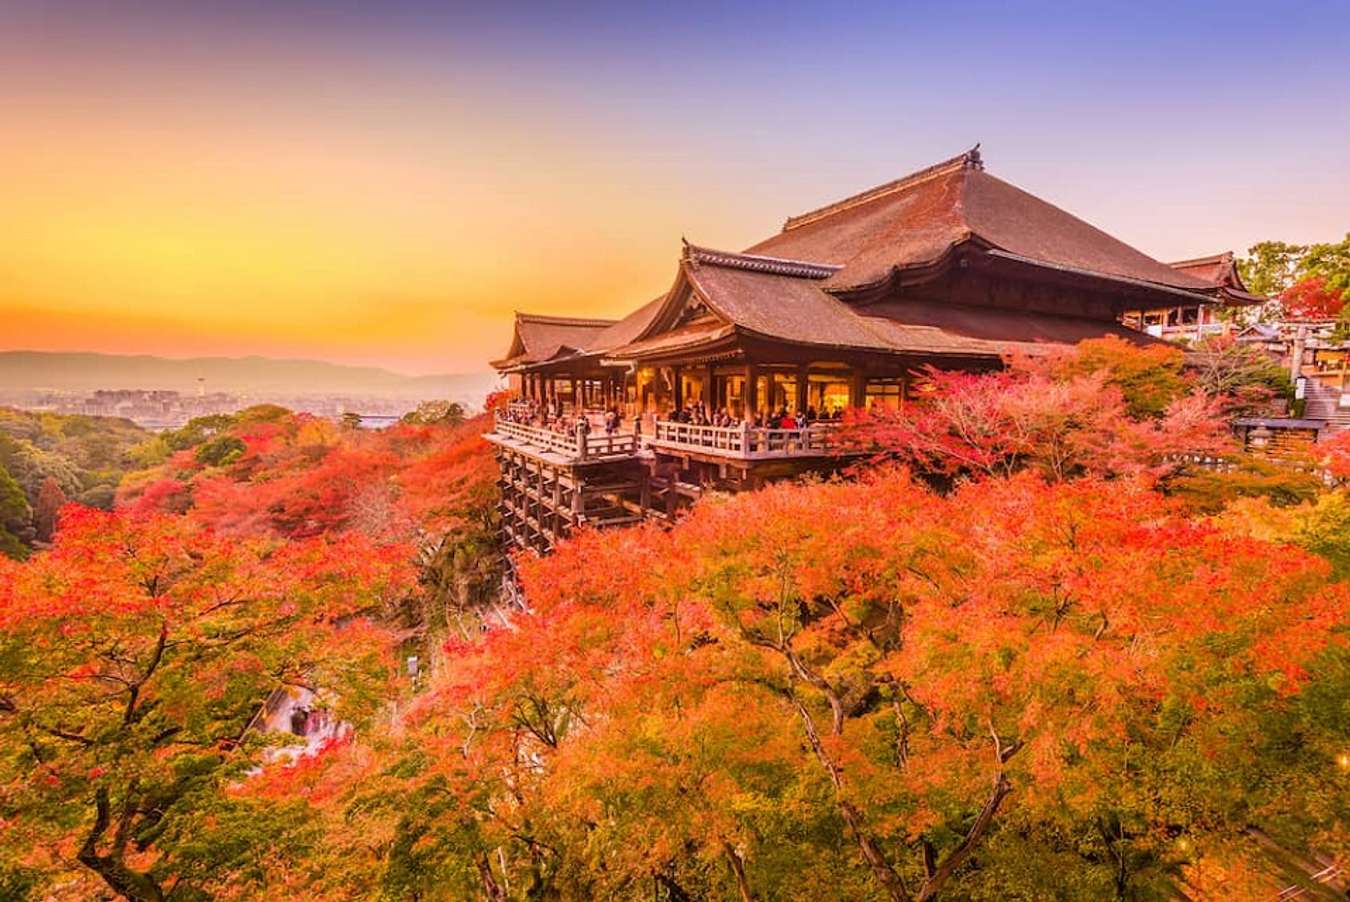 Khám phá chùa Thanh Thủy - Nét đẹp kiến trúc độc đáo tại Nhật Bản